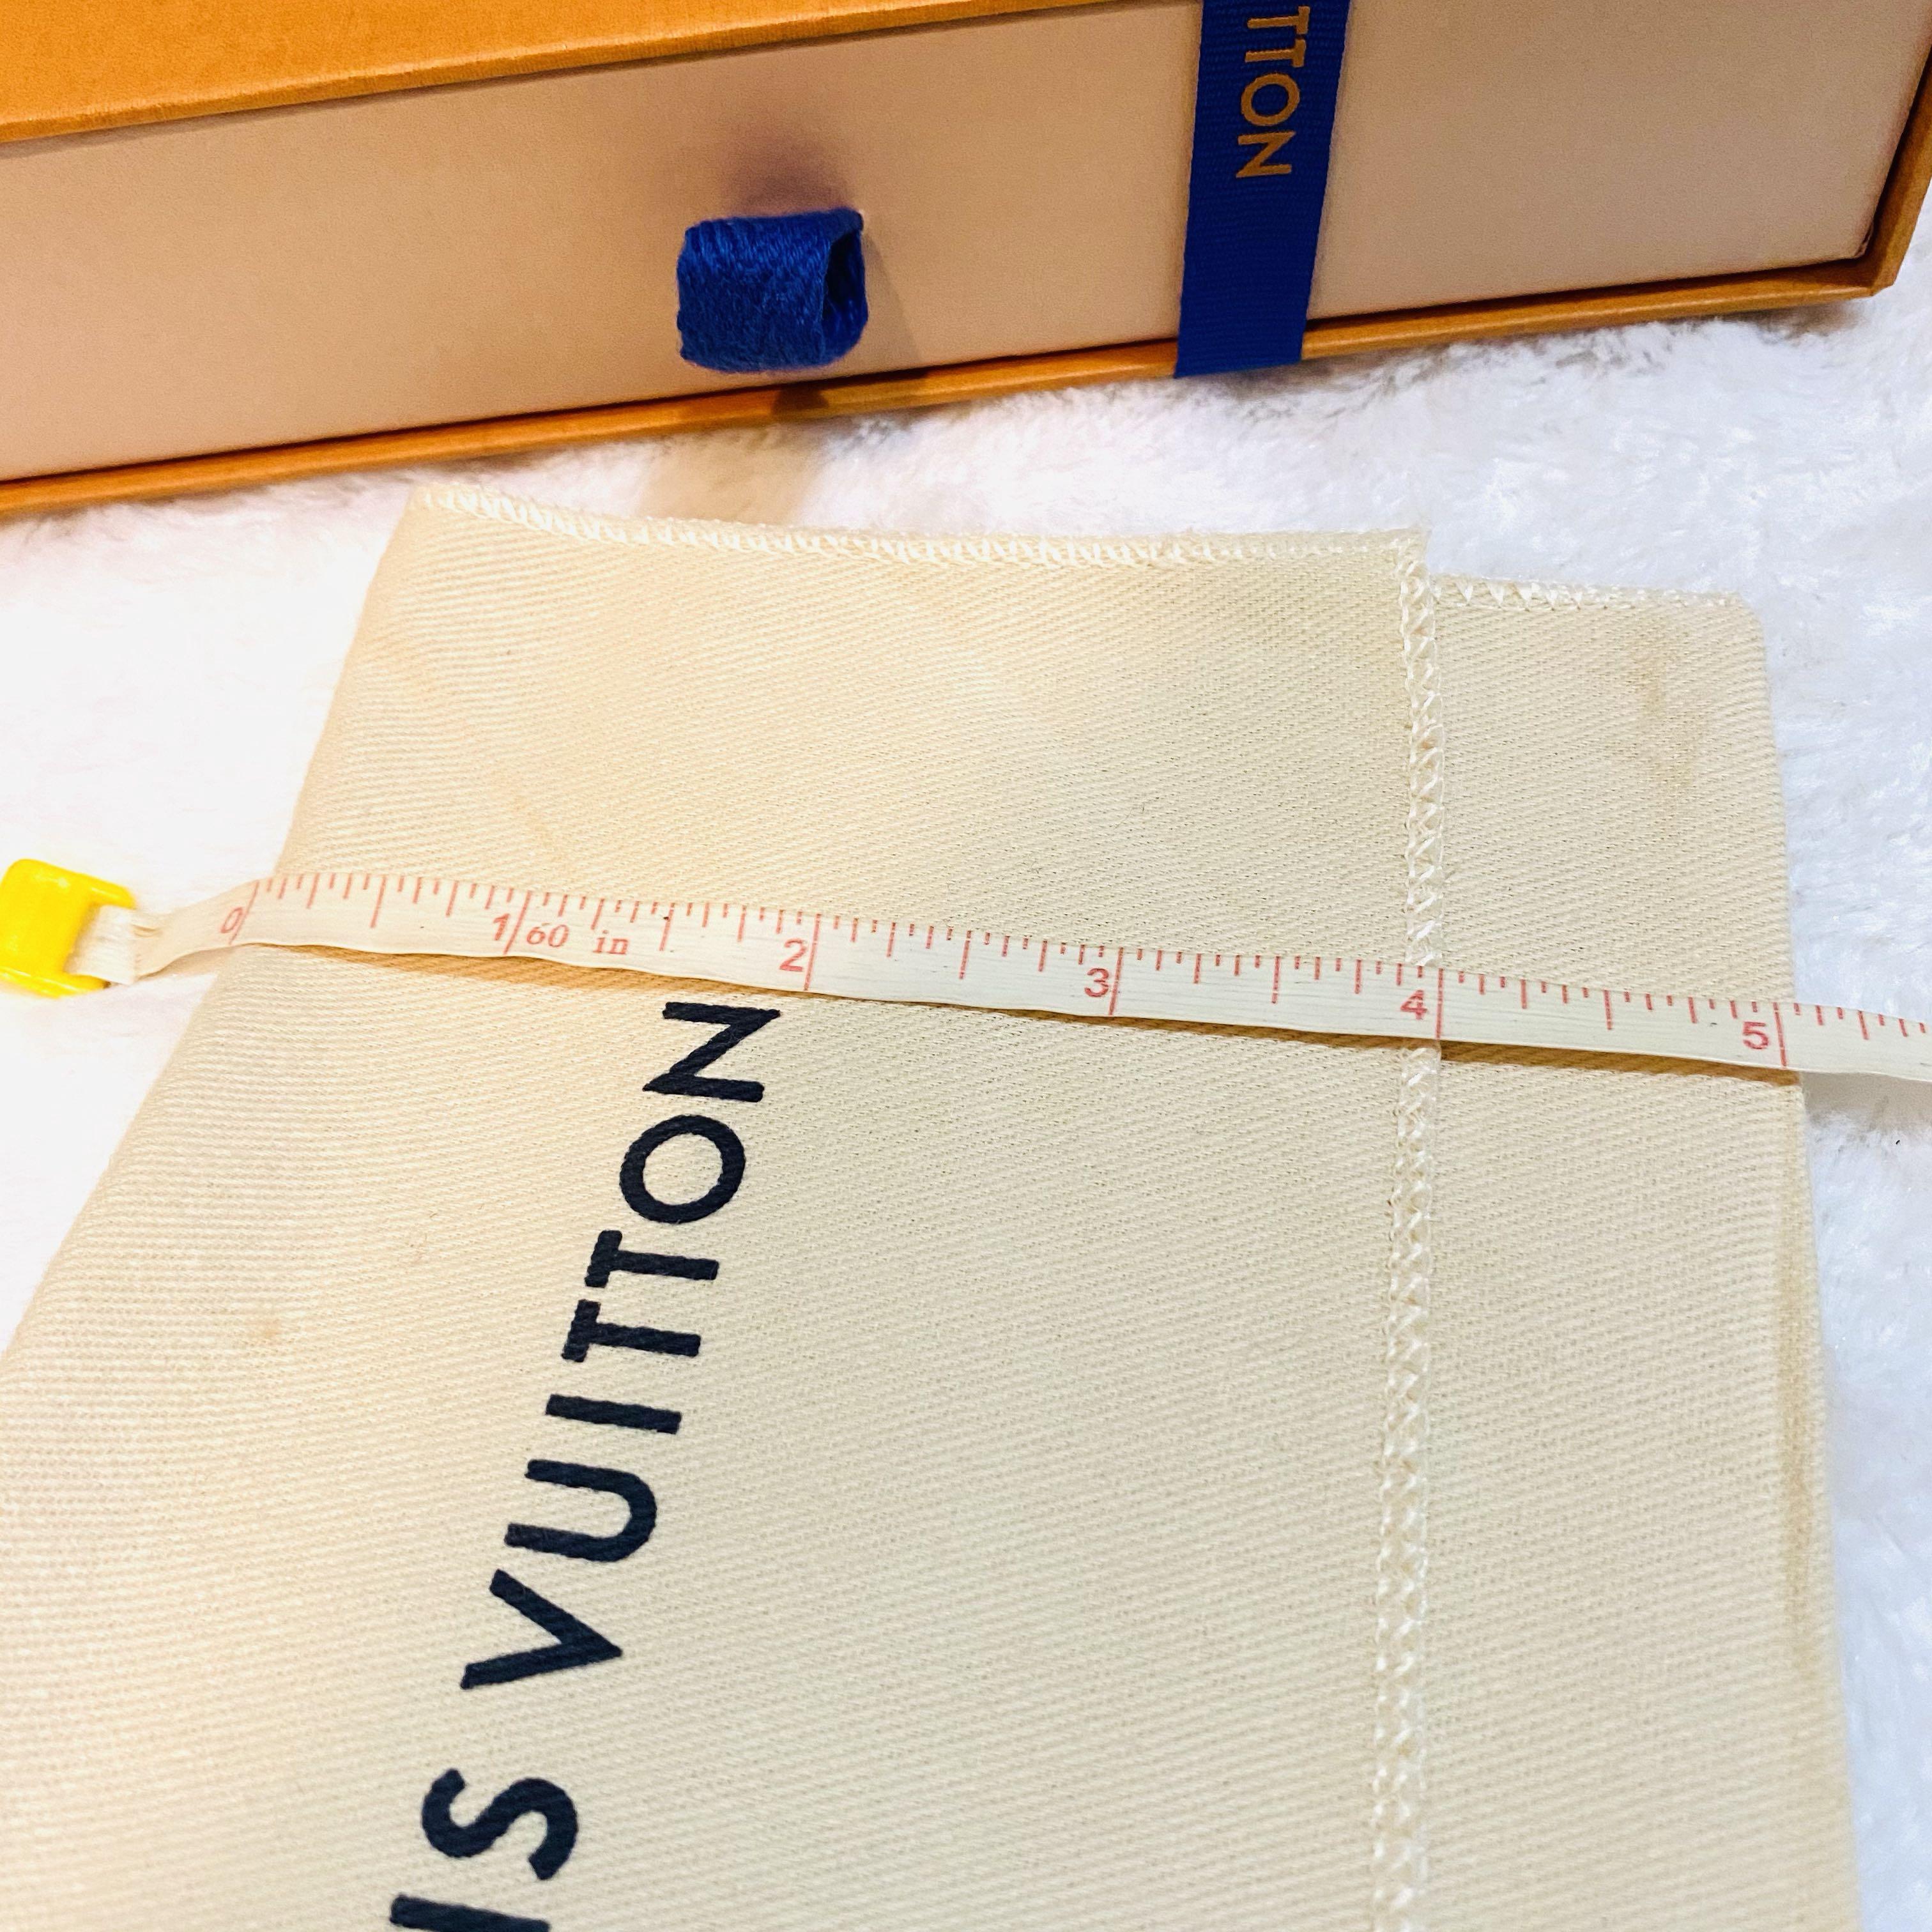 Authentic Louis Vuitton Box Complete Set Orange, Women's